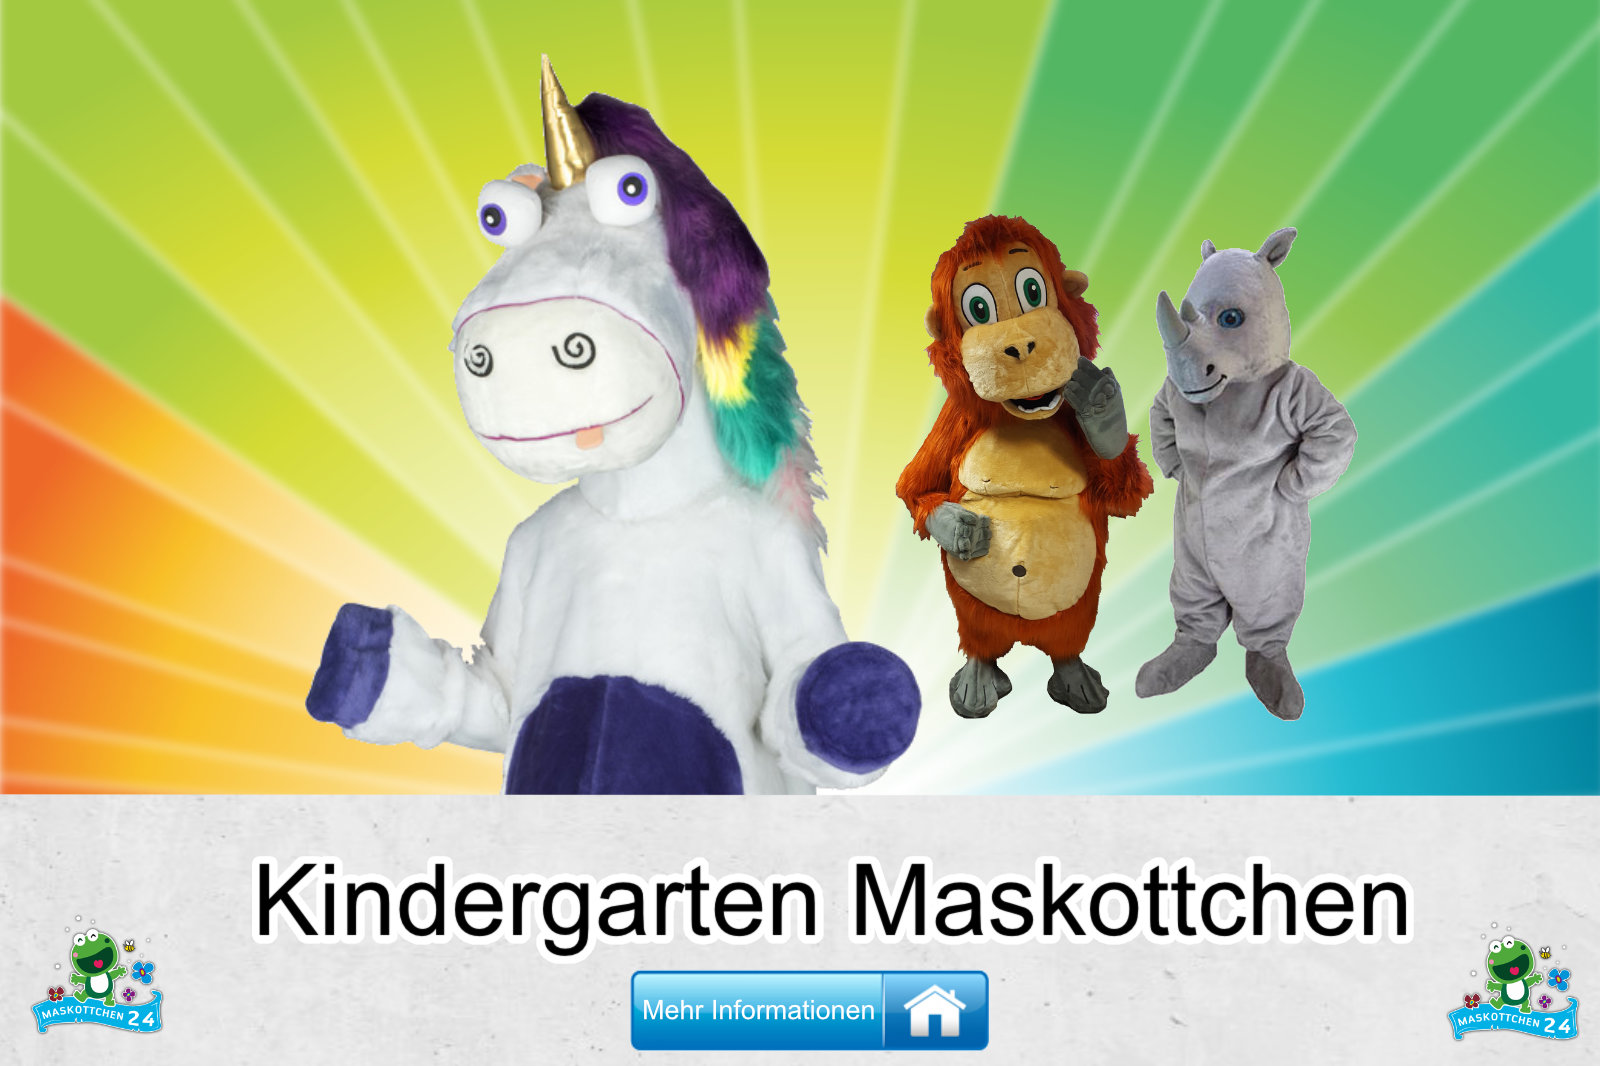 Kindergarten Kostüme Maskottchen günstig kaufen Produktion